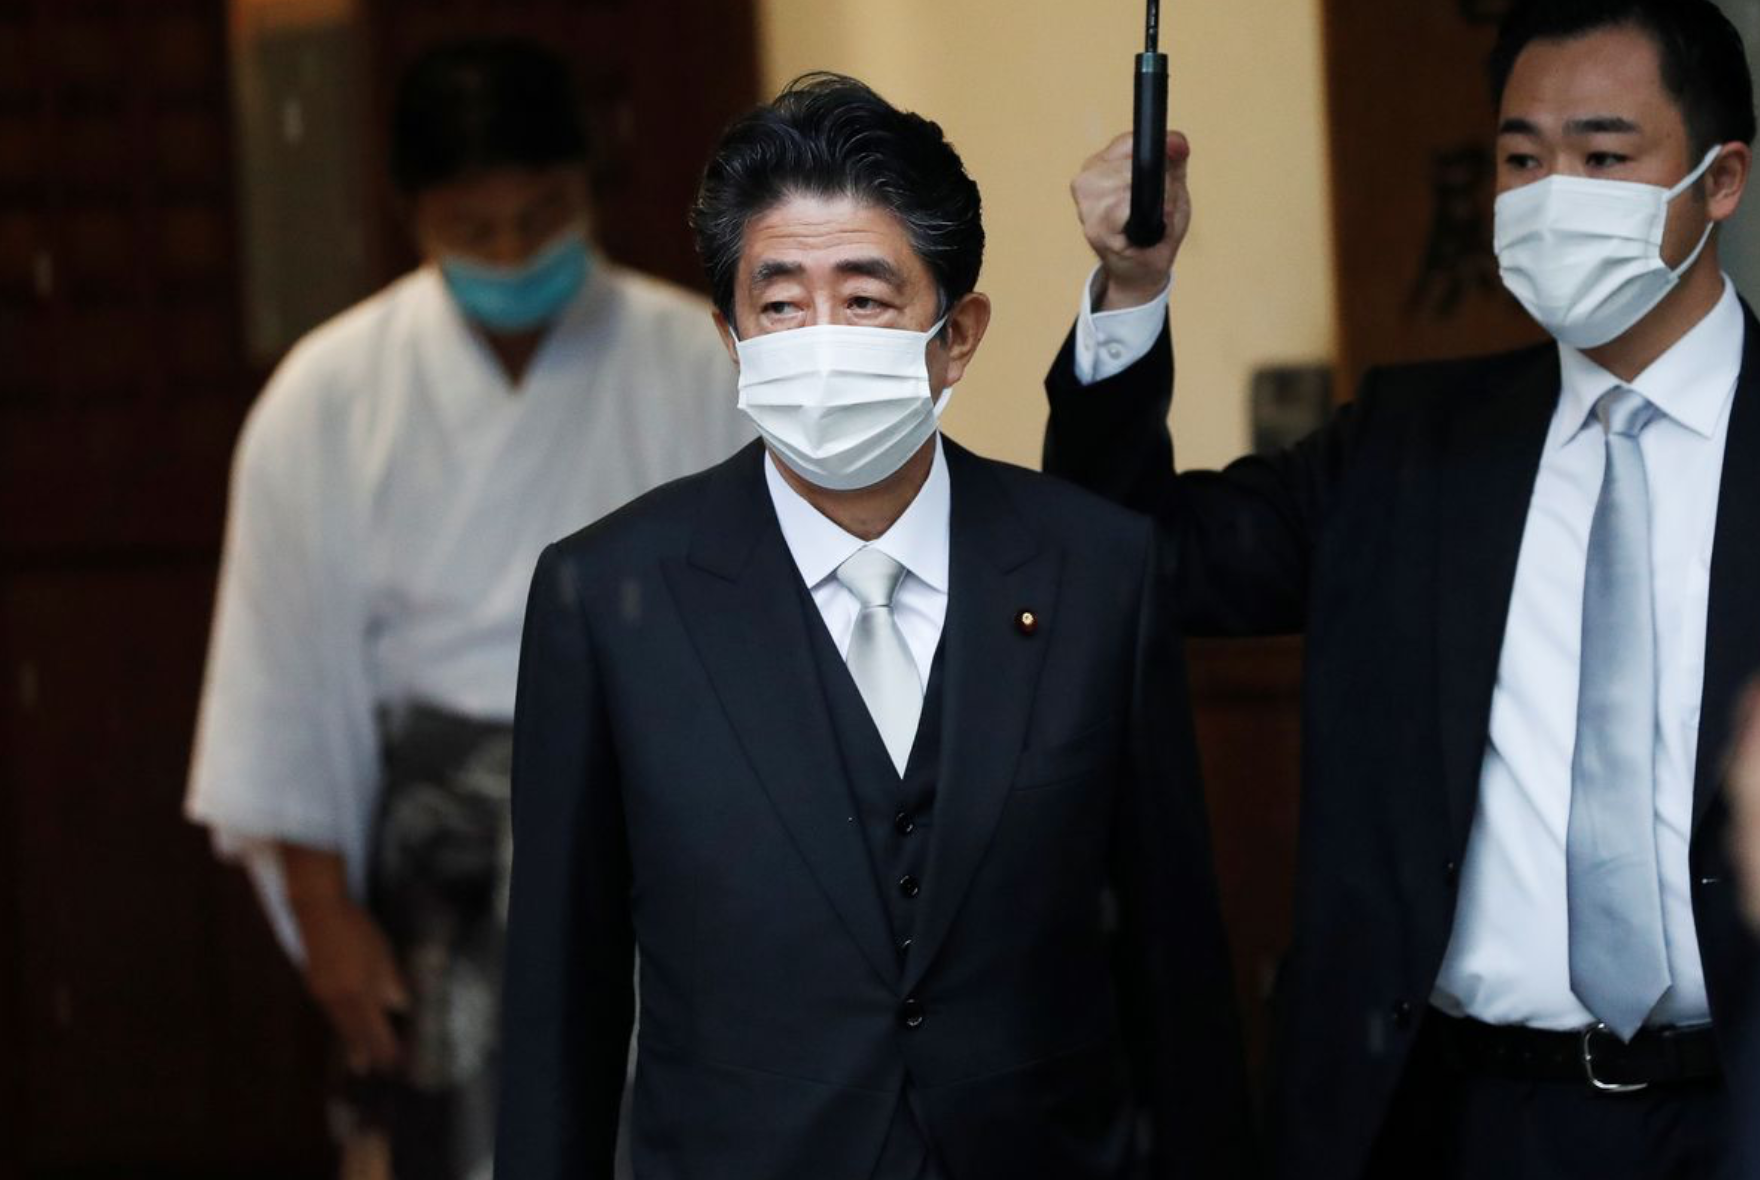 Tin thế giới - Cựu Thủ tướng Nhật Shinzo Abe bị bắn gục, nghi phạm đã bị bắt